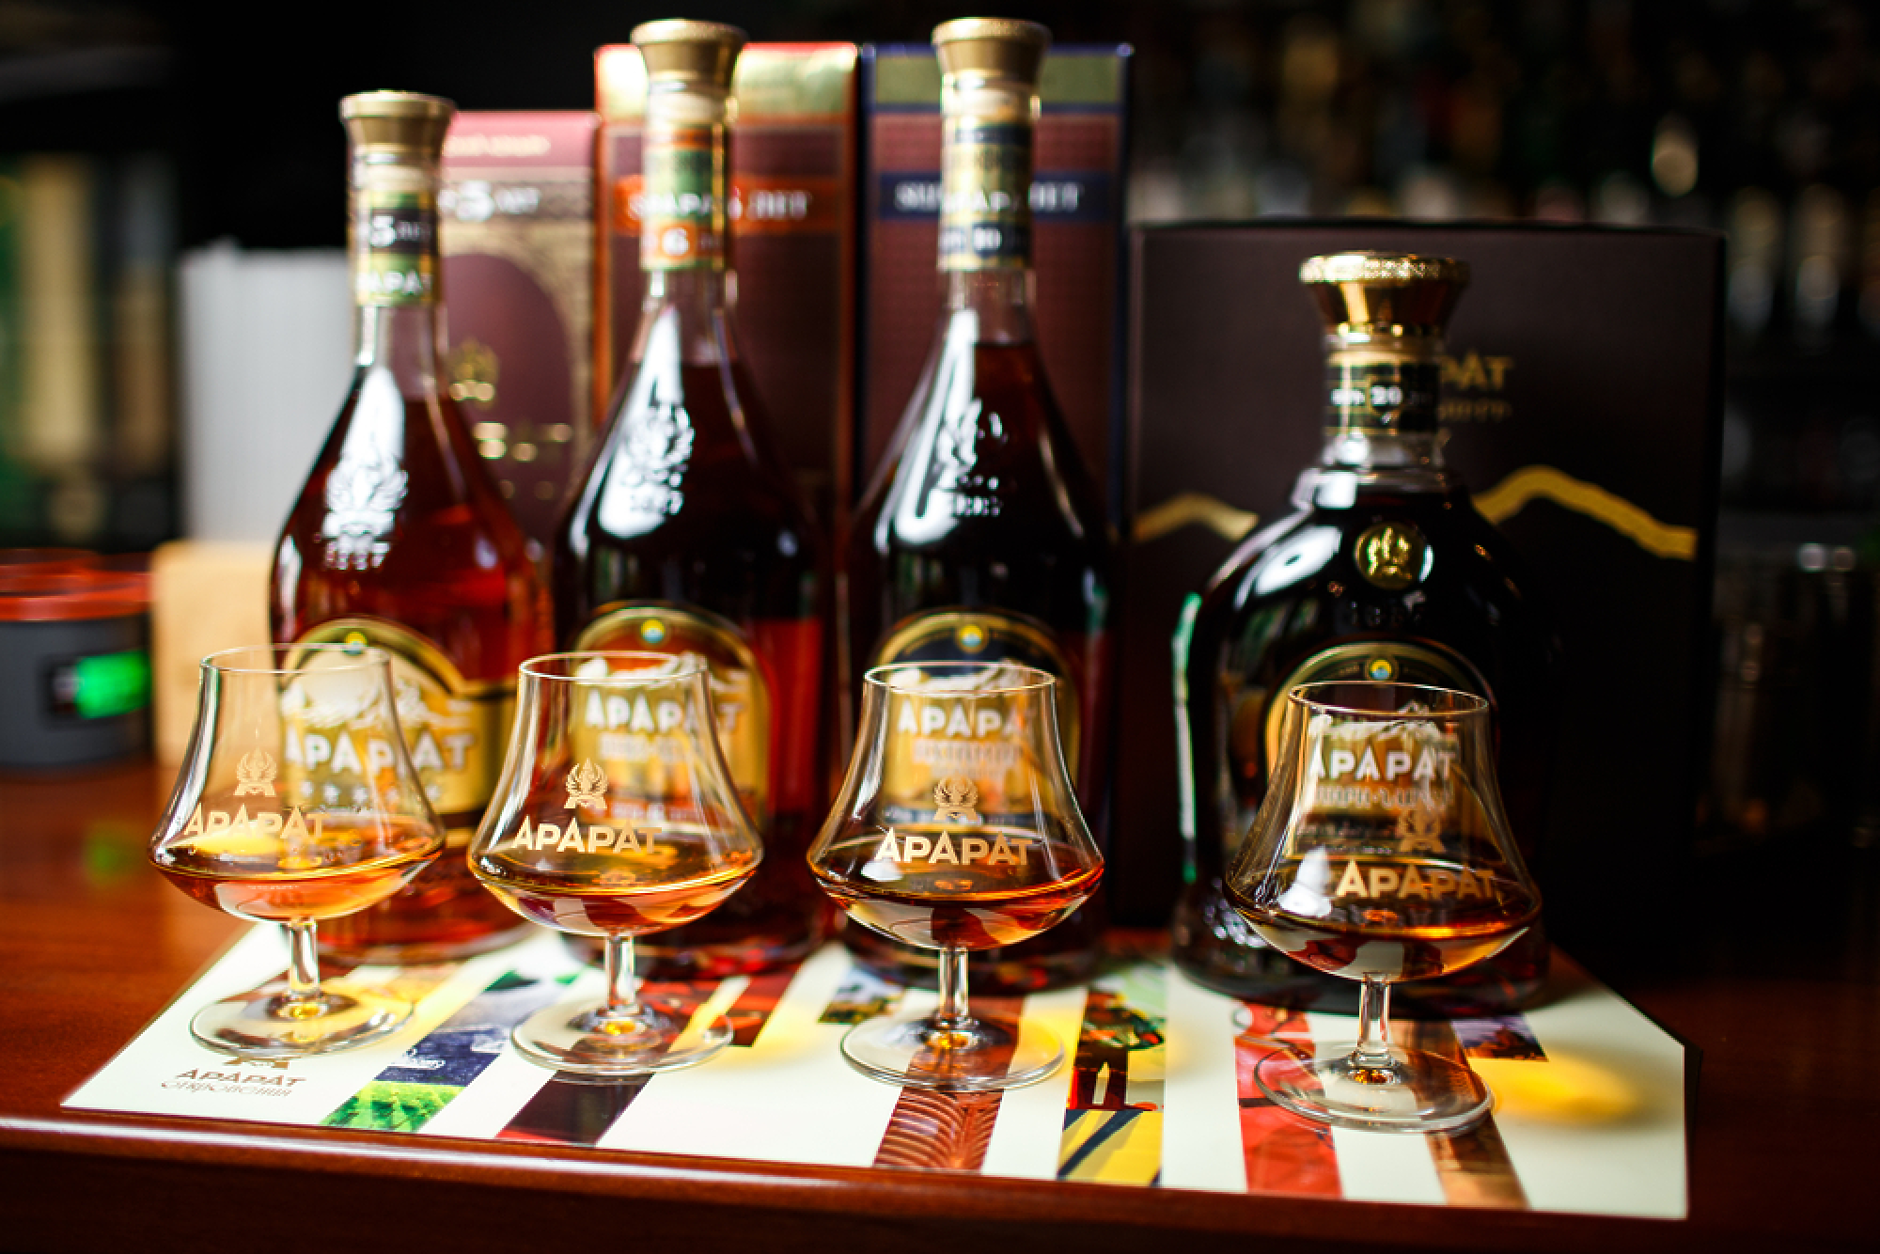 Арменският коняк ще се изнася на европейския пазар под марката Armenian brandy